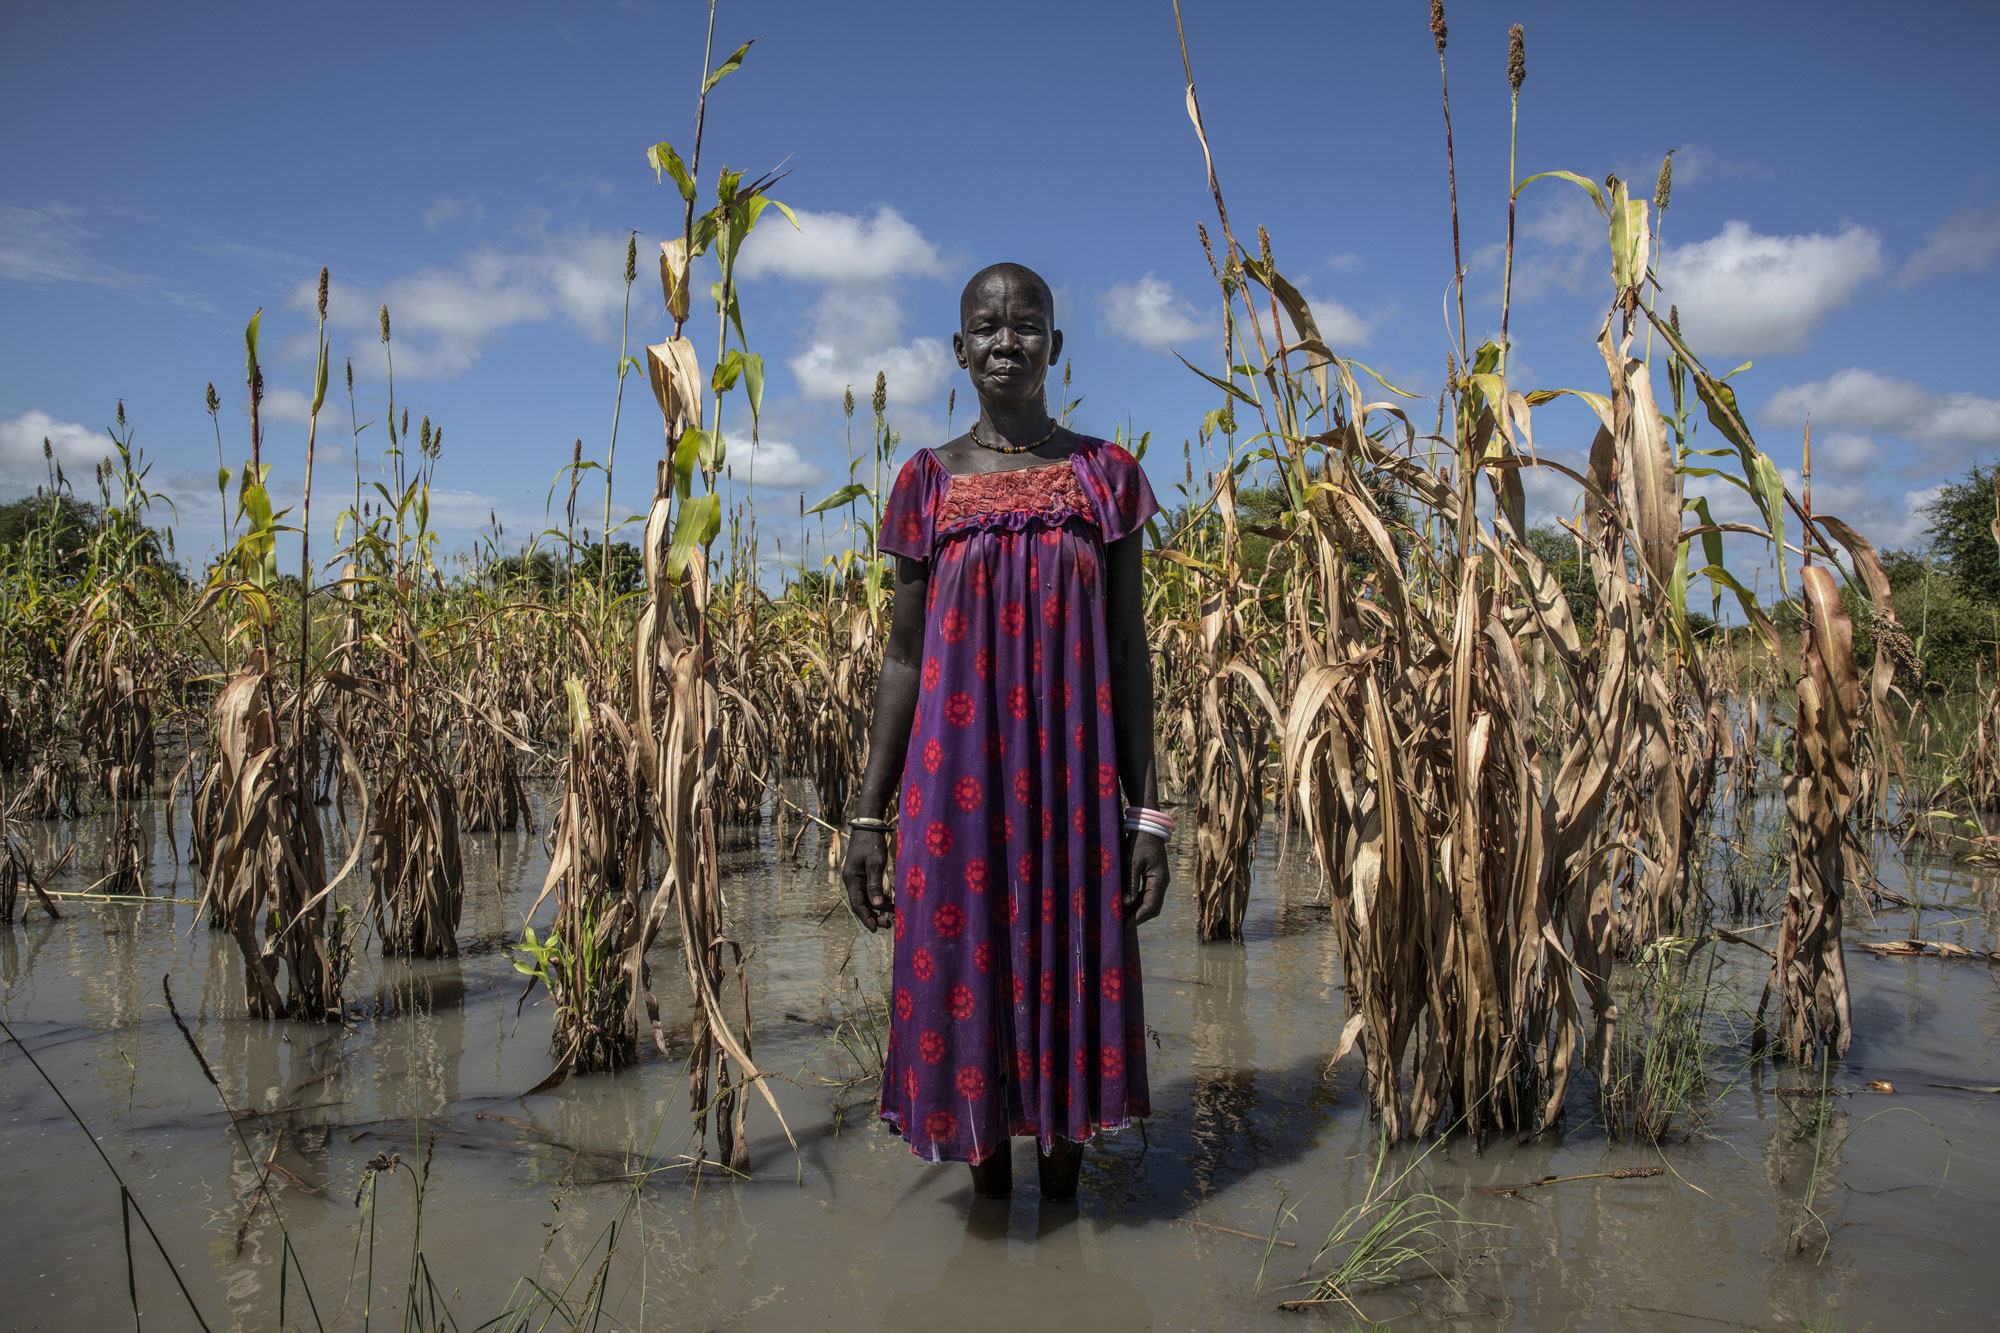 Nyadend Majok akiwa amesismama kando ya shamba lake la mtama lililosambaratishwa na mafuriko nchini Sudan Kusini